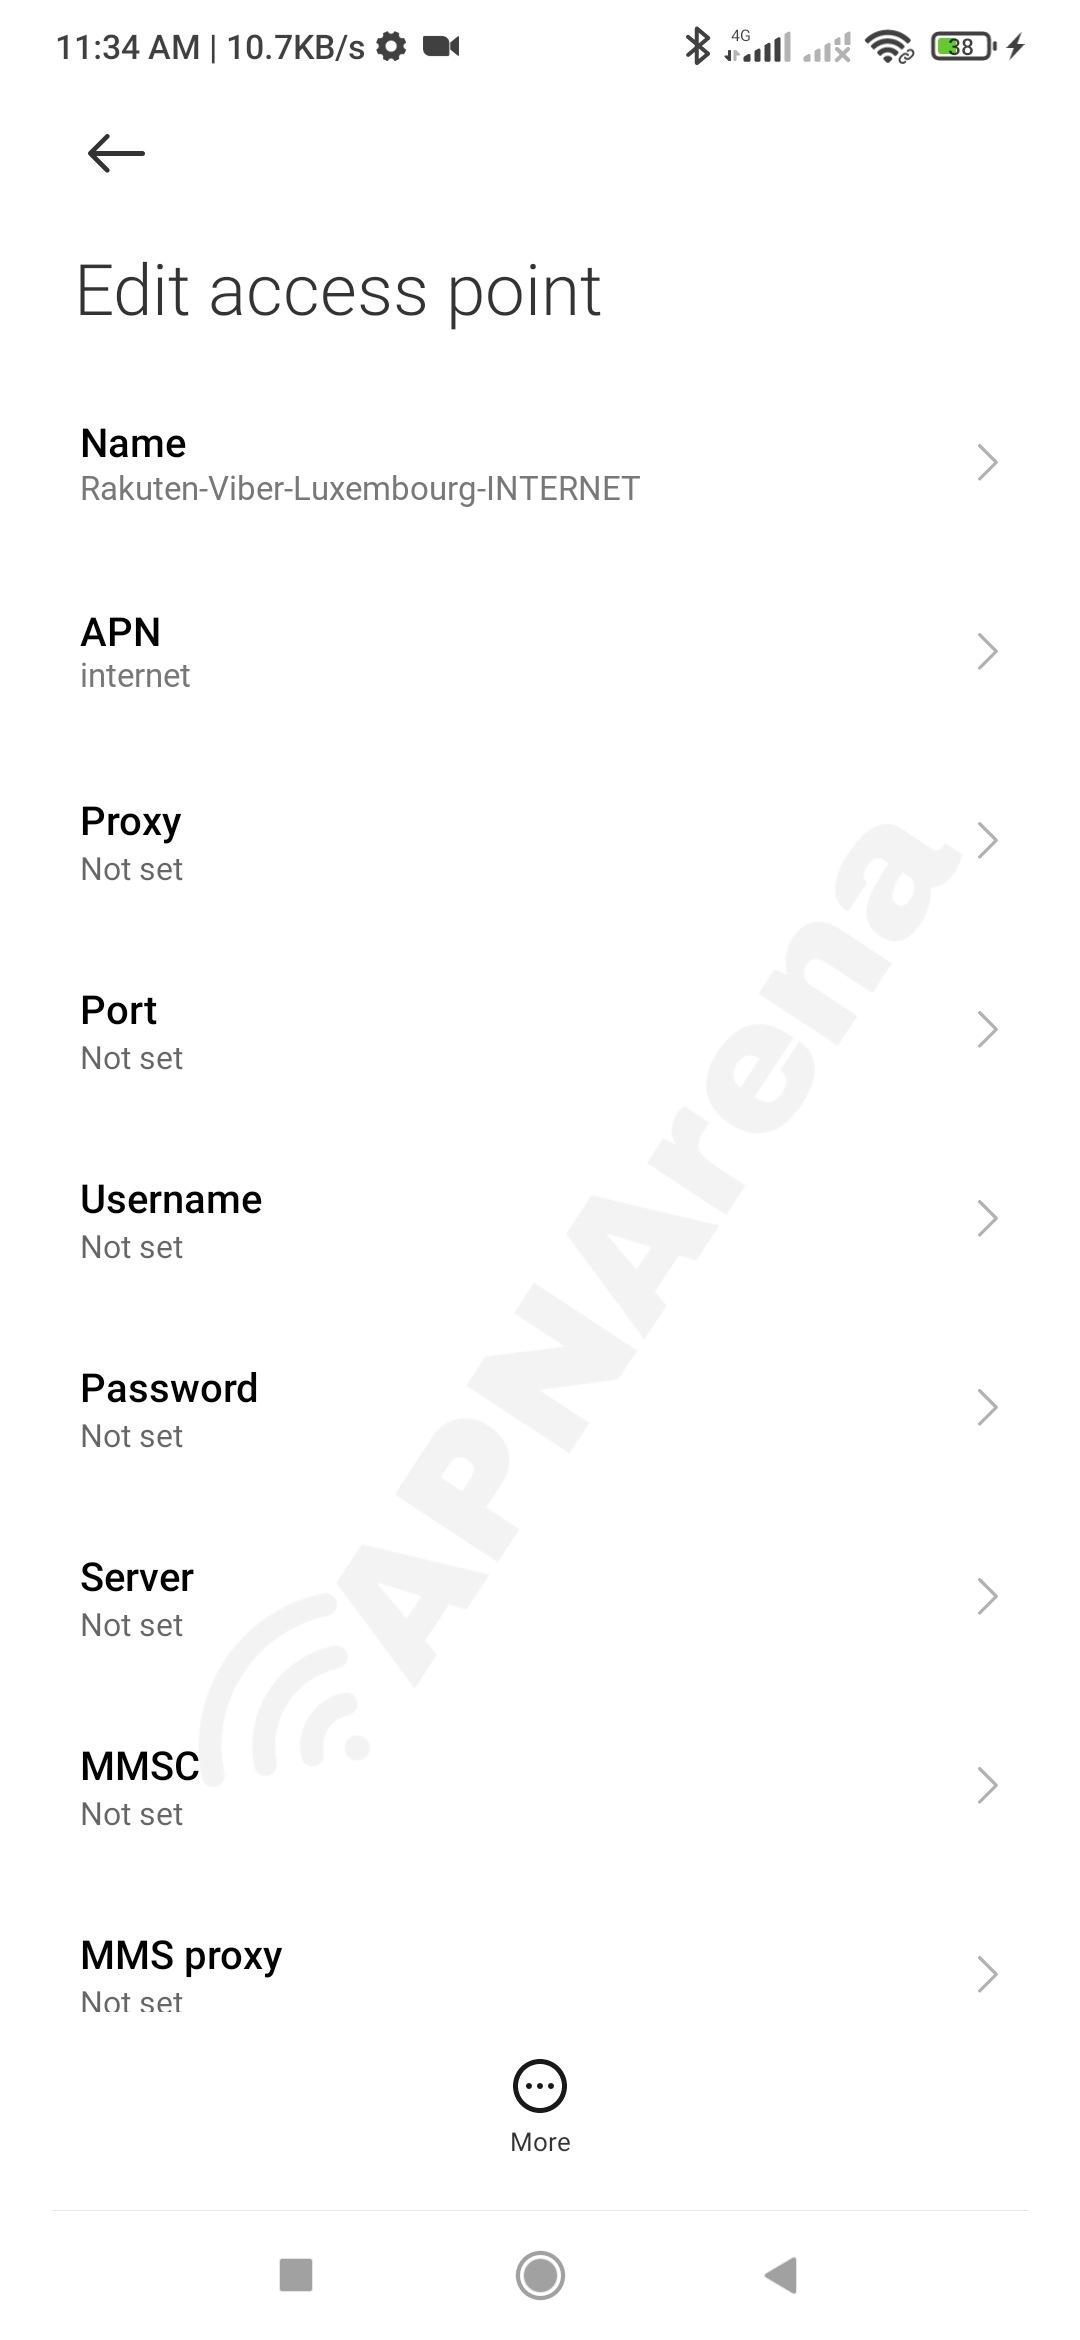 Rakuten Viber Luxembourg APN Settings for Android